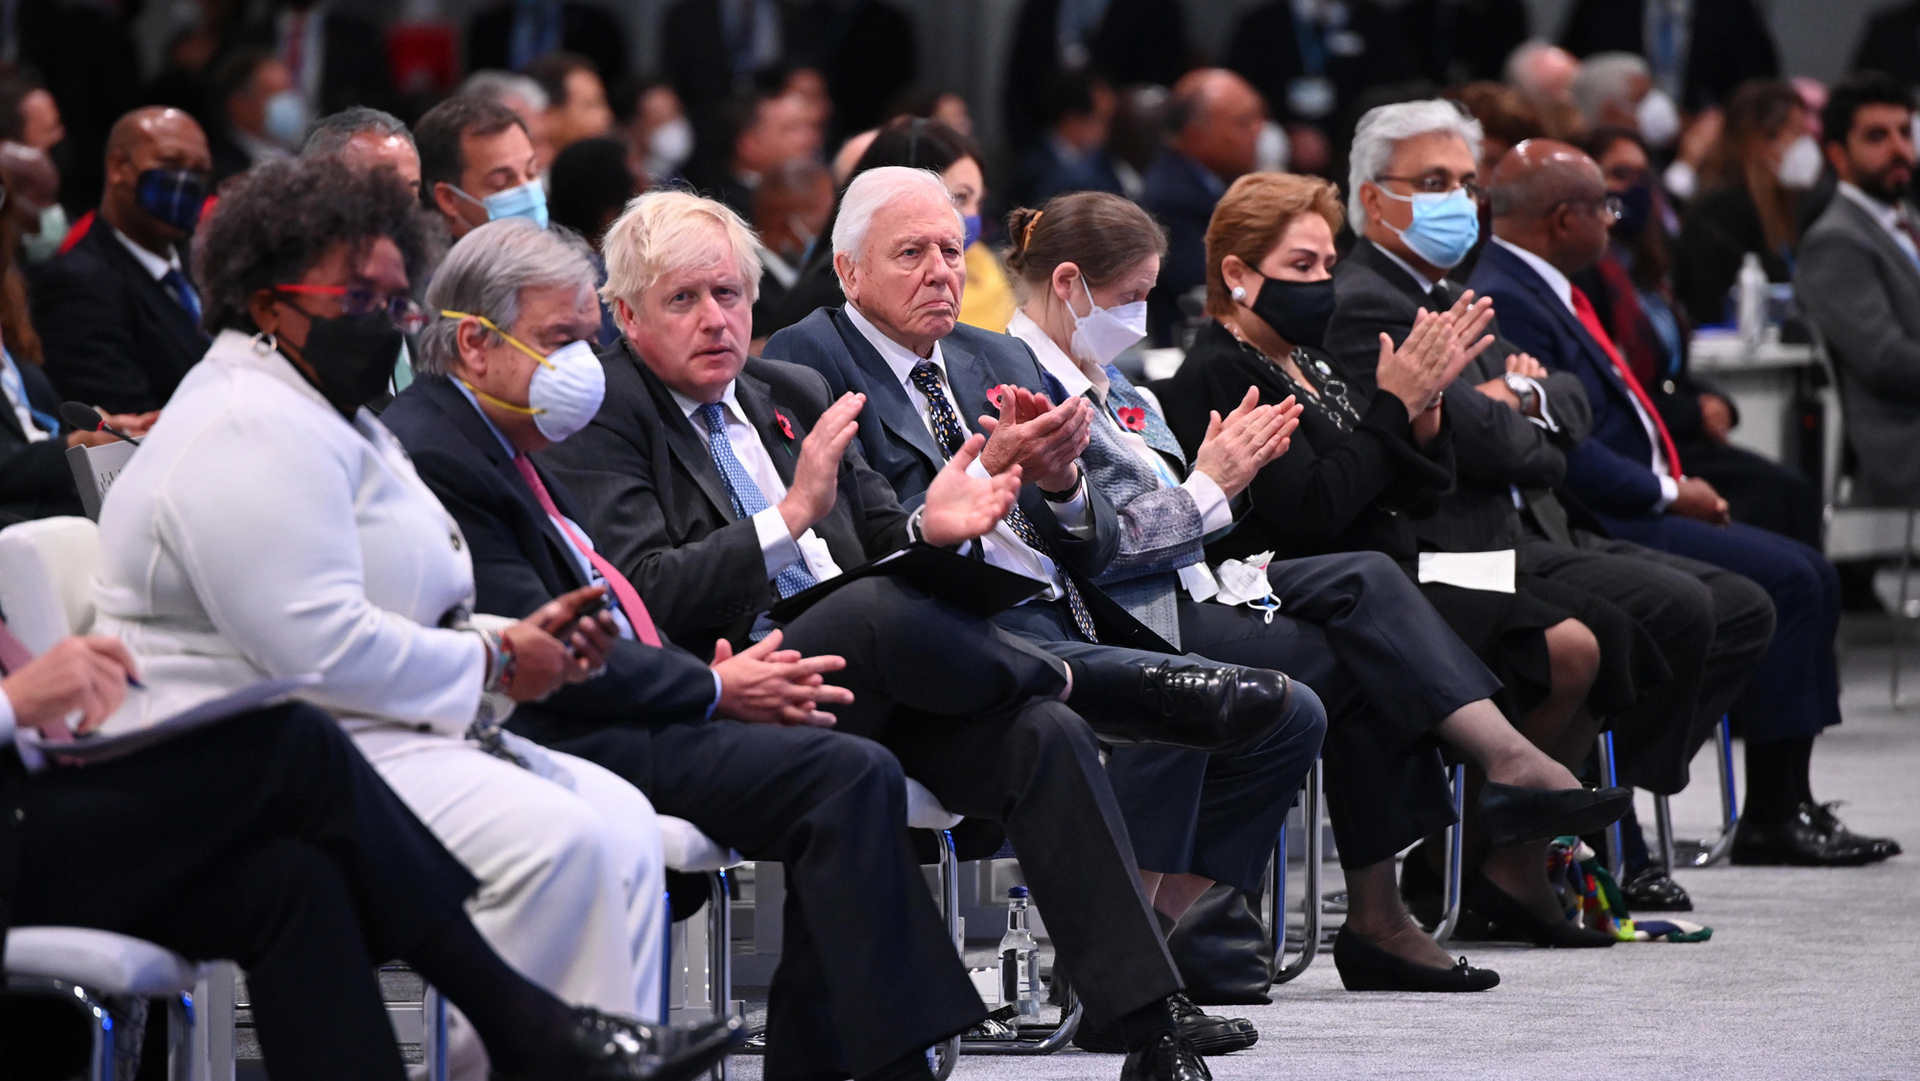 מזכ"ל האו"ם אנטוניו גוטרס ראש ממשלת בריטניה בוריס ג'ונסון וסר דיוויד אטנבורו משתתפים בטקס הפתיחה של ועידת האו"ם לשינויי אקלים COP26 ב-SECC ב-1 בנובמבר 2021 בגלזגו בריטניה